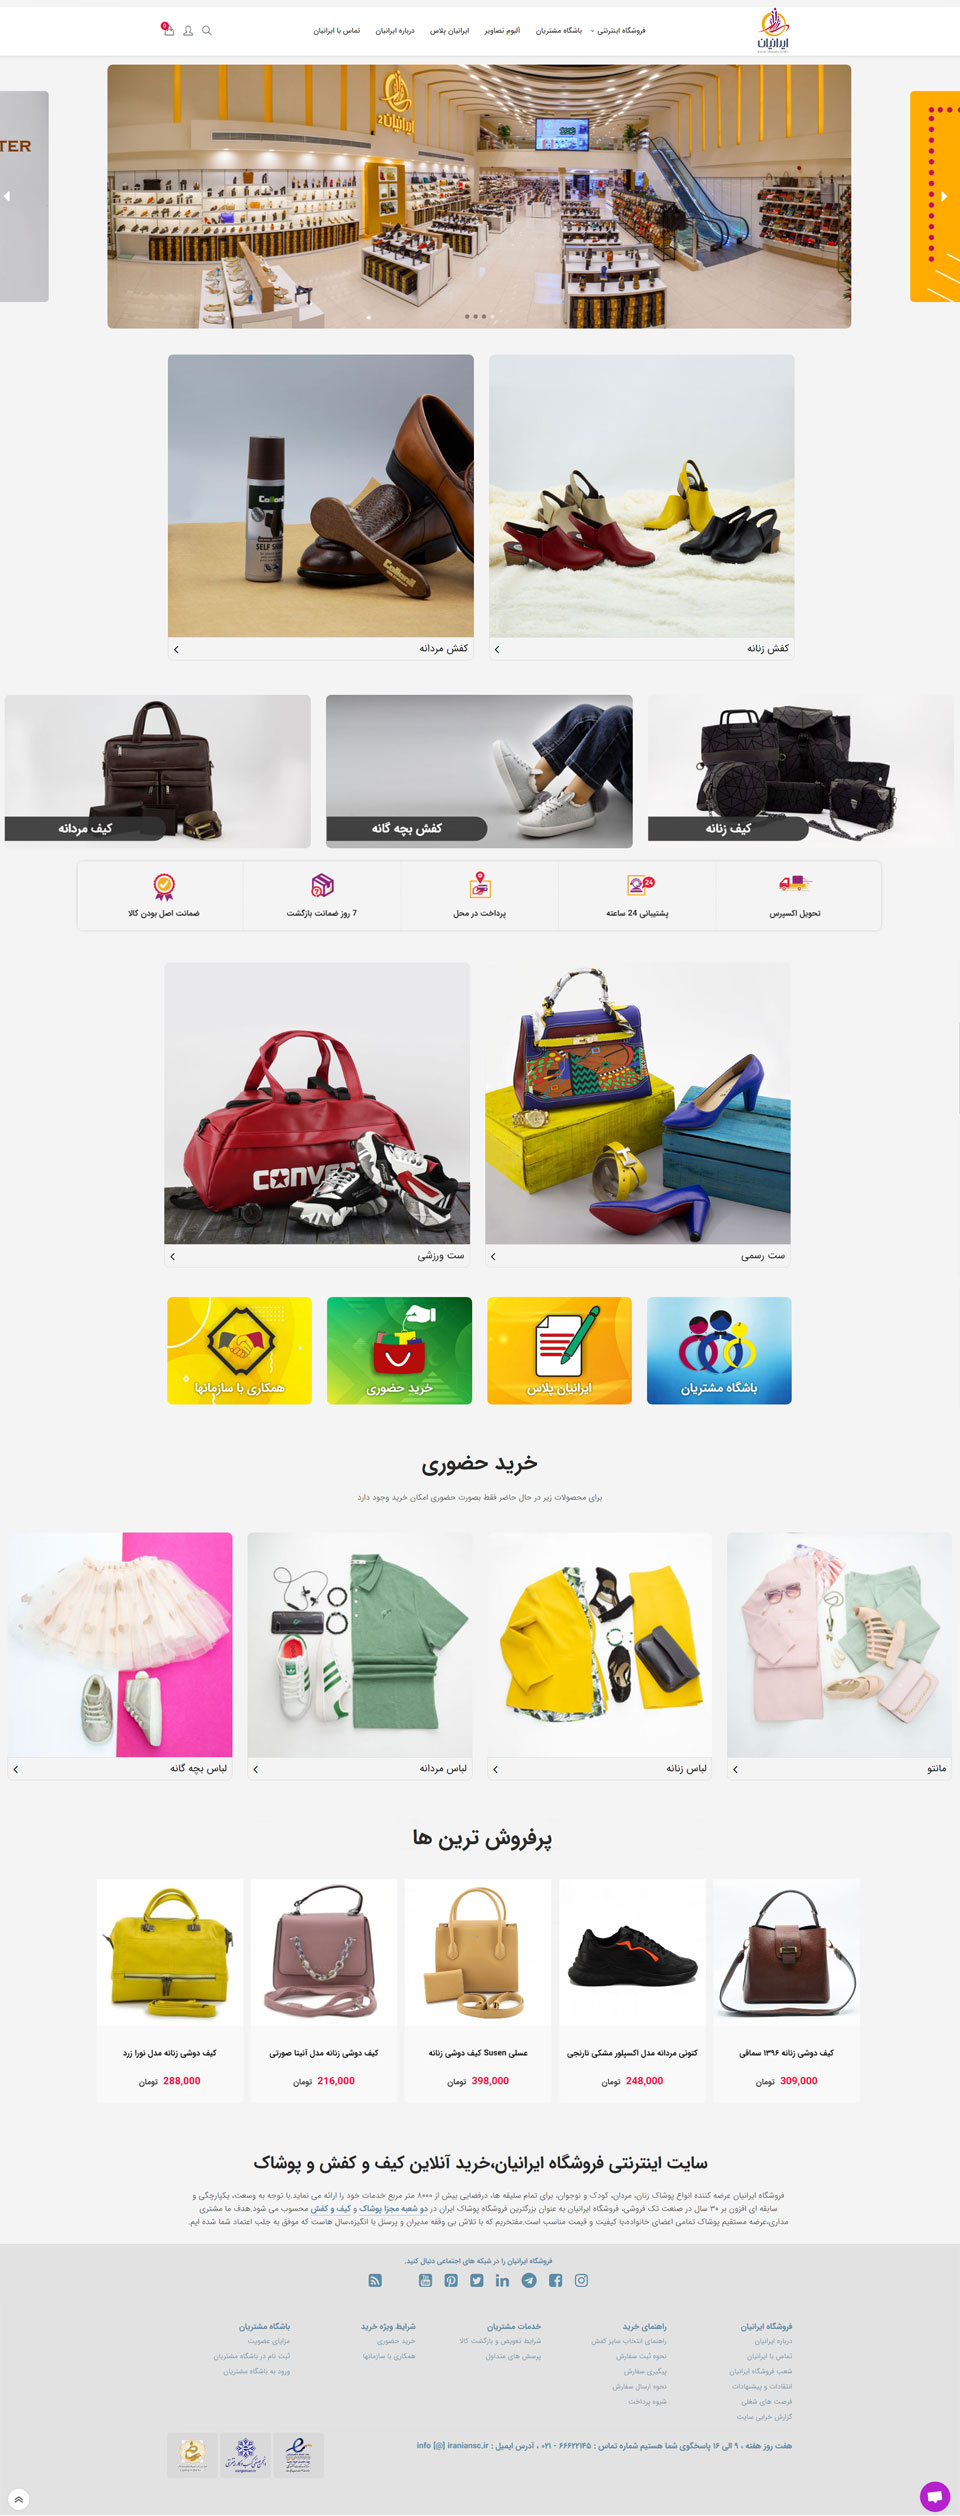 طراحی سایت فروشگاه ایرانیان